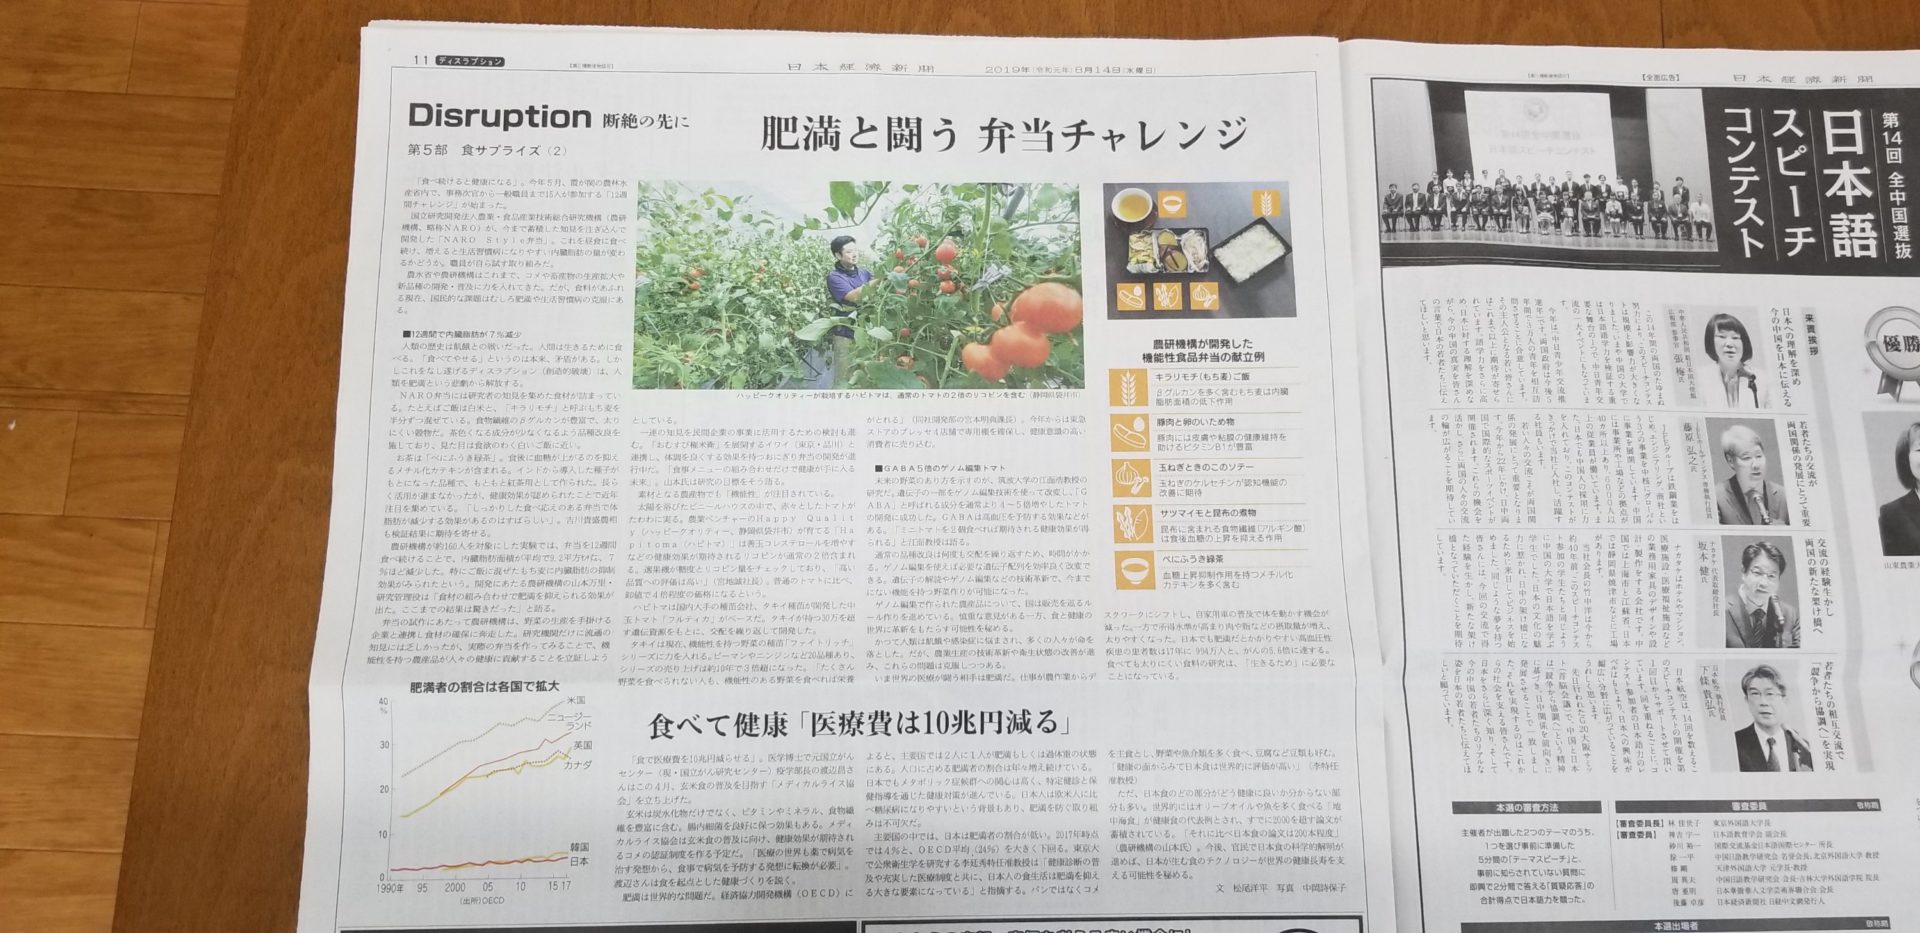 8月14日の日経新聞様にリコピン2倍Hapitomaの記事が掲載されました！